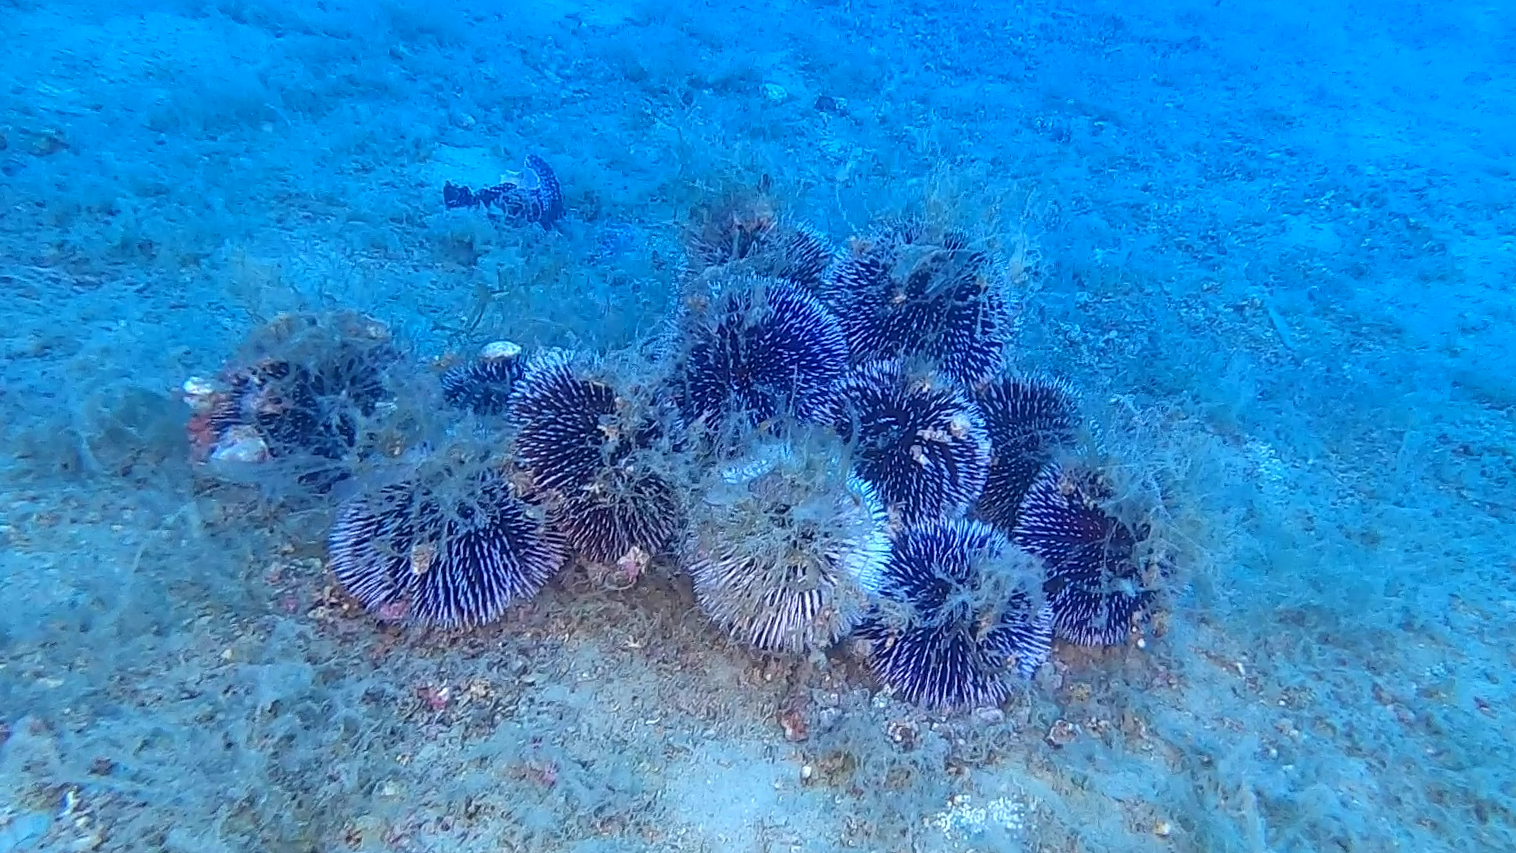 Riproduzione ricci di mare - Sea urchin reproduction - www.intotheblue.it